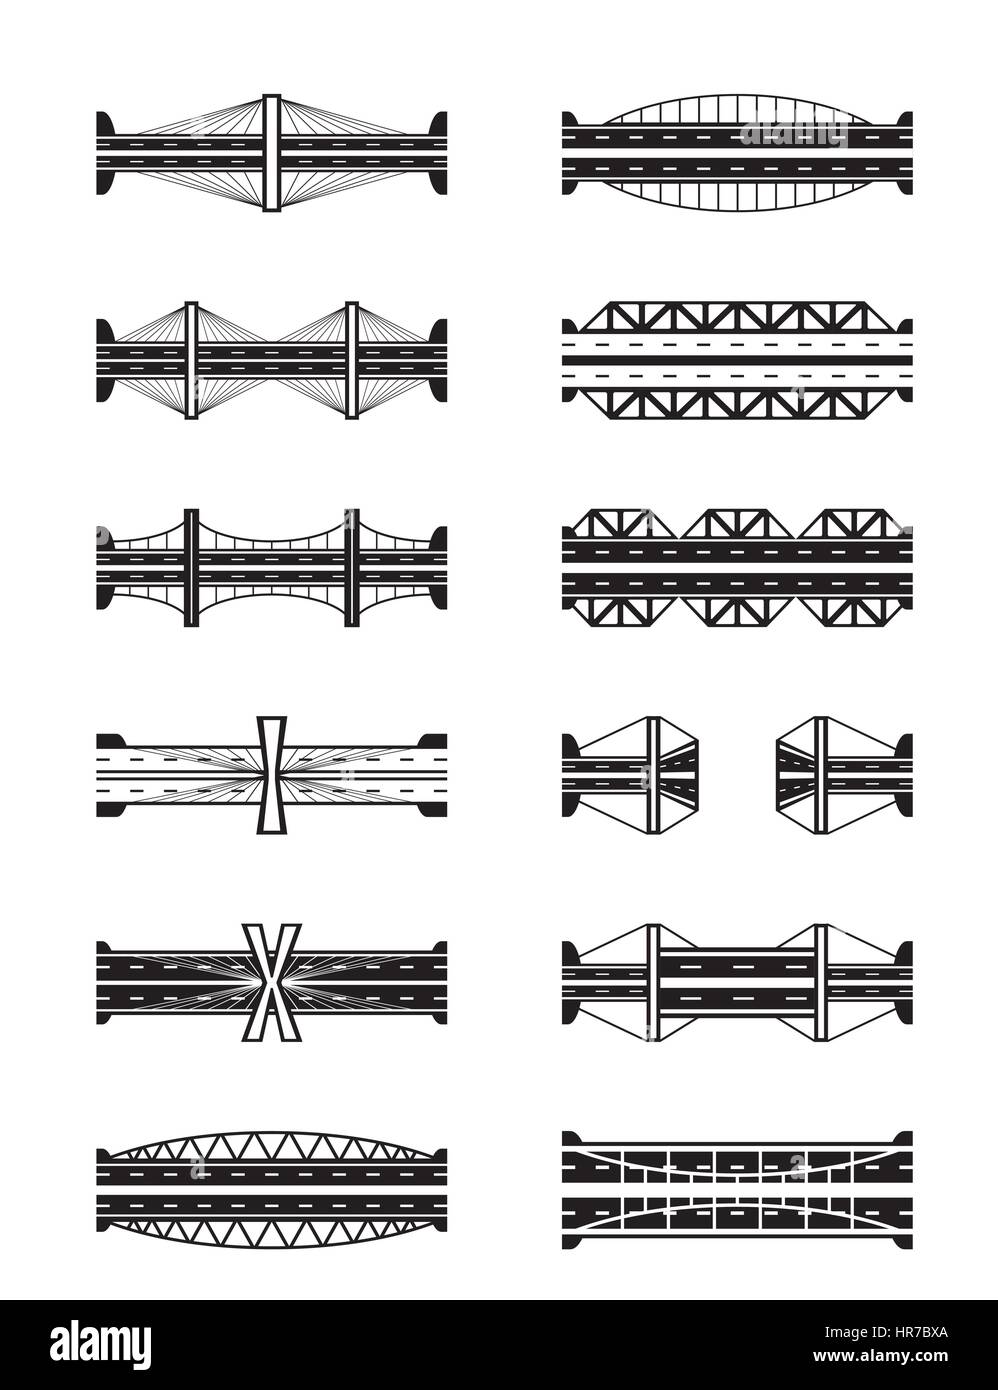 Différents types de ponts vus du dessus - vector illustration Illustration de Vecteur